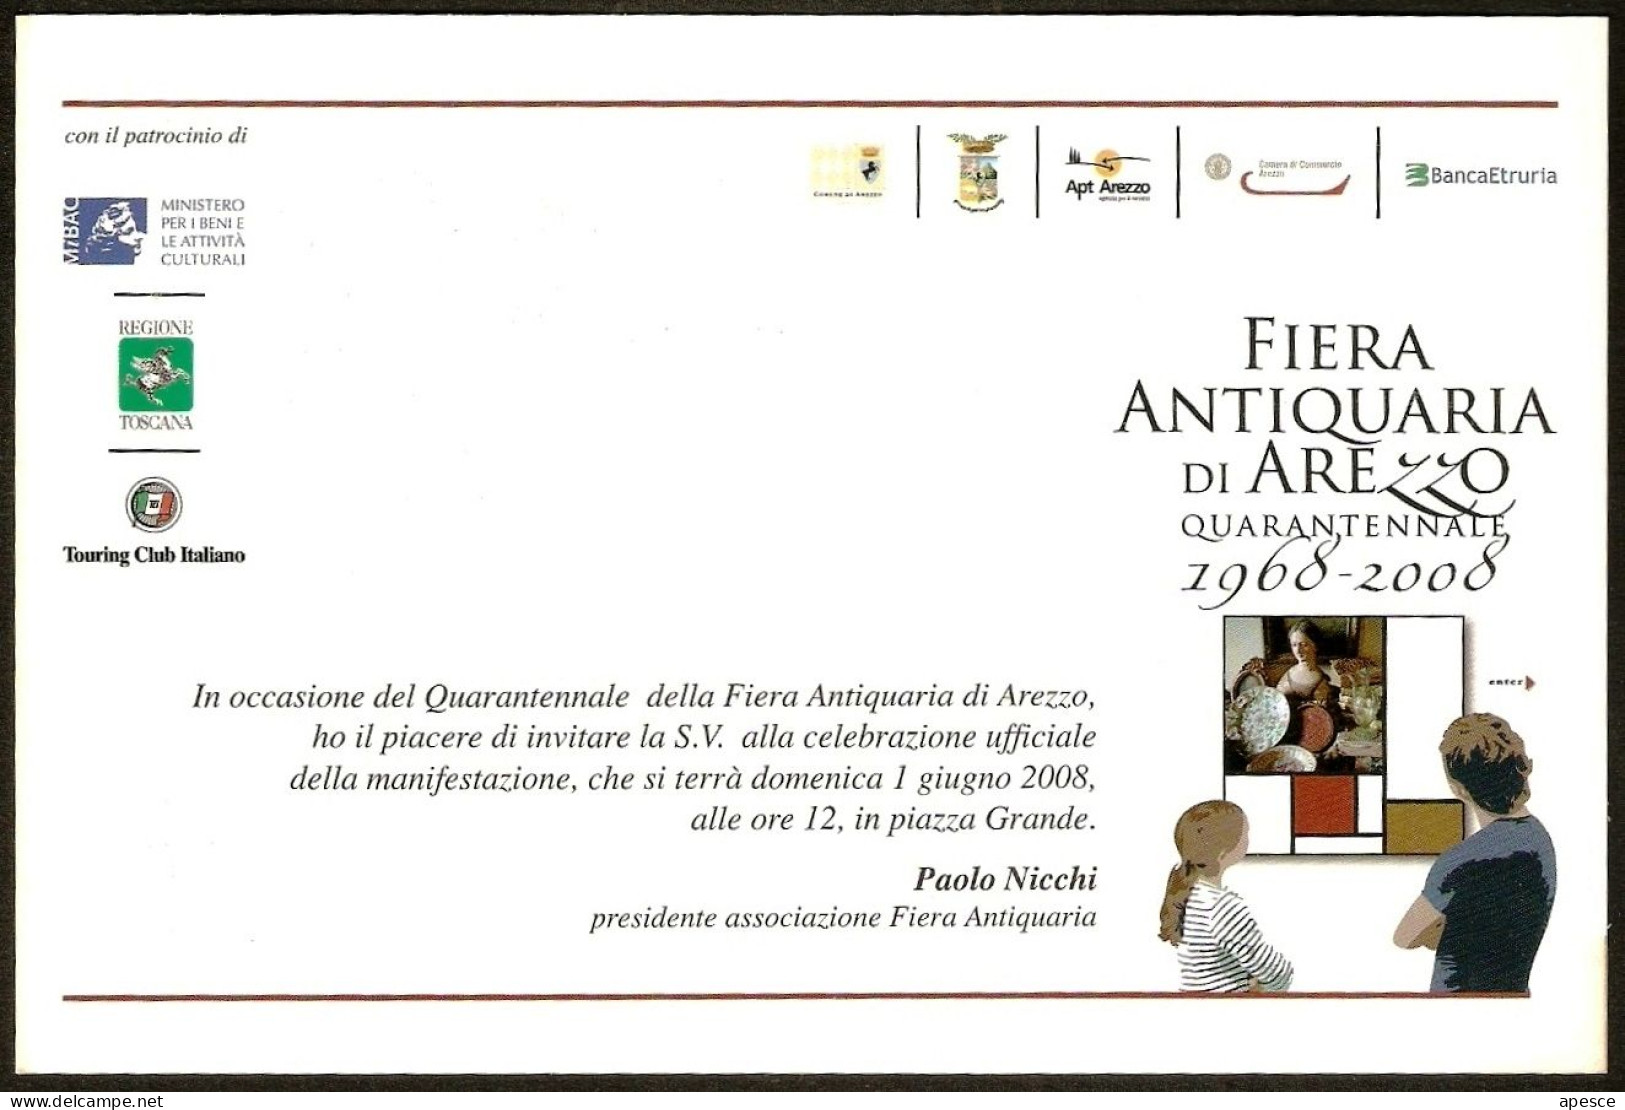 ITALIA - FIERA ANTIQUARIA DI AREZZO - QUARANTENNALE - 1968/2008 - CARTOLINA INVITO MANIFESTAZIONE - I - Markets